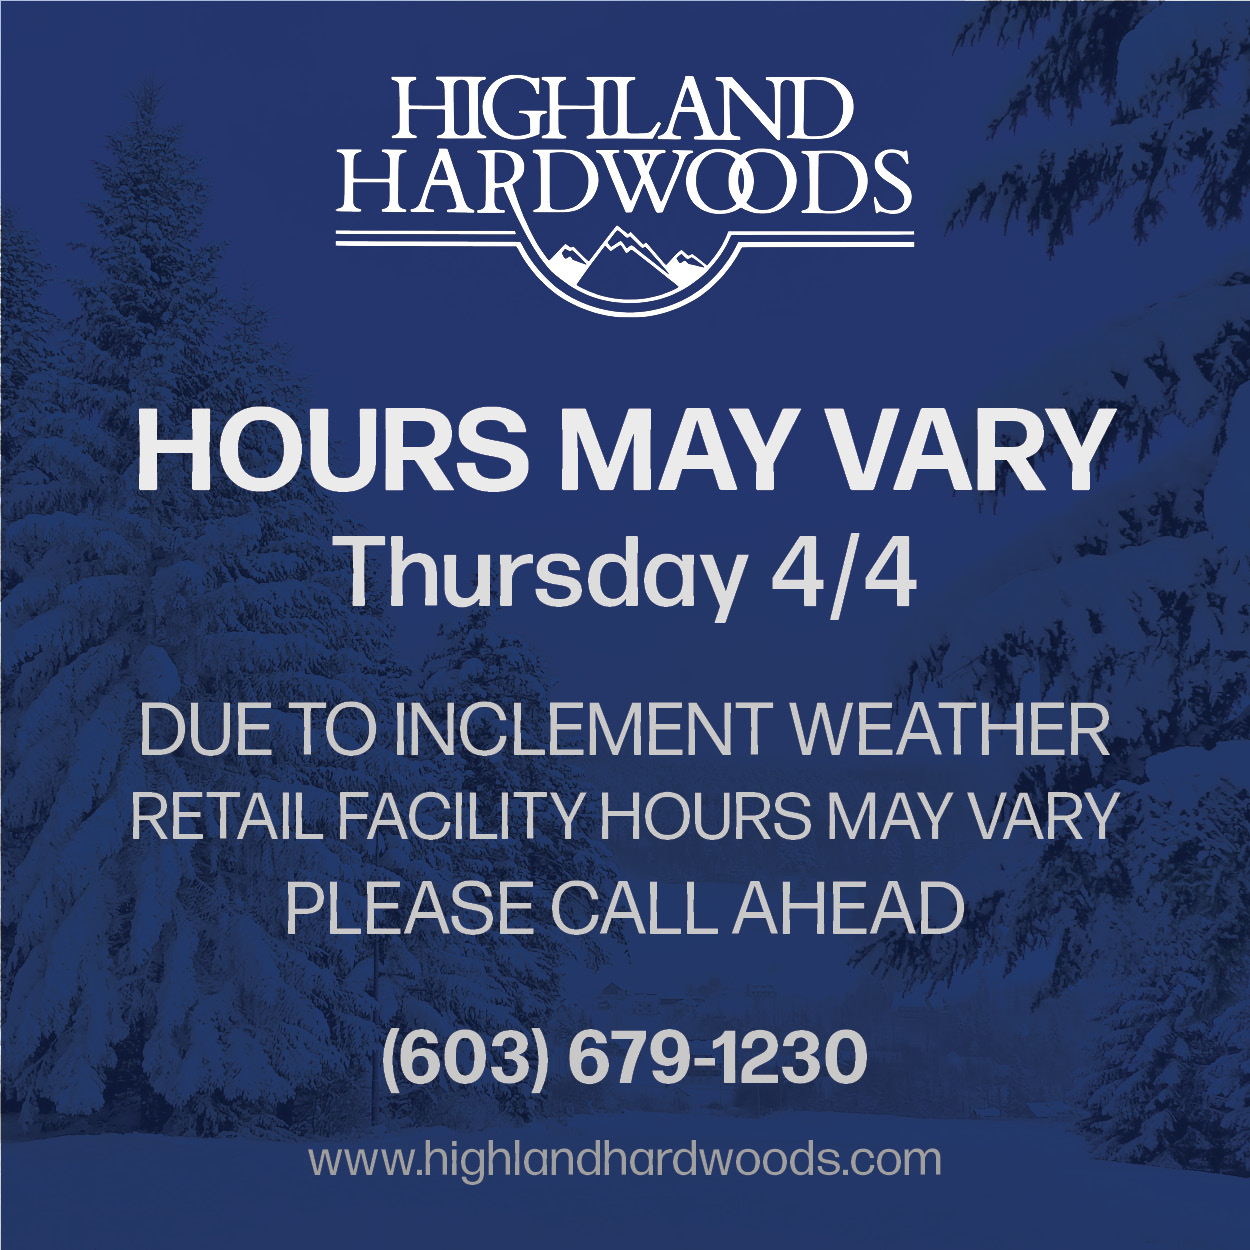 Highland Hardwoods 6612, 407 NH-125, Brentwood New Hampshire 03833